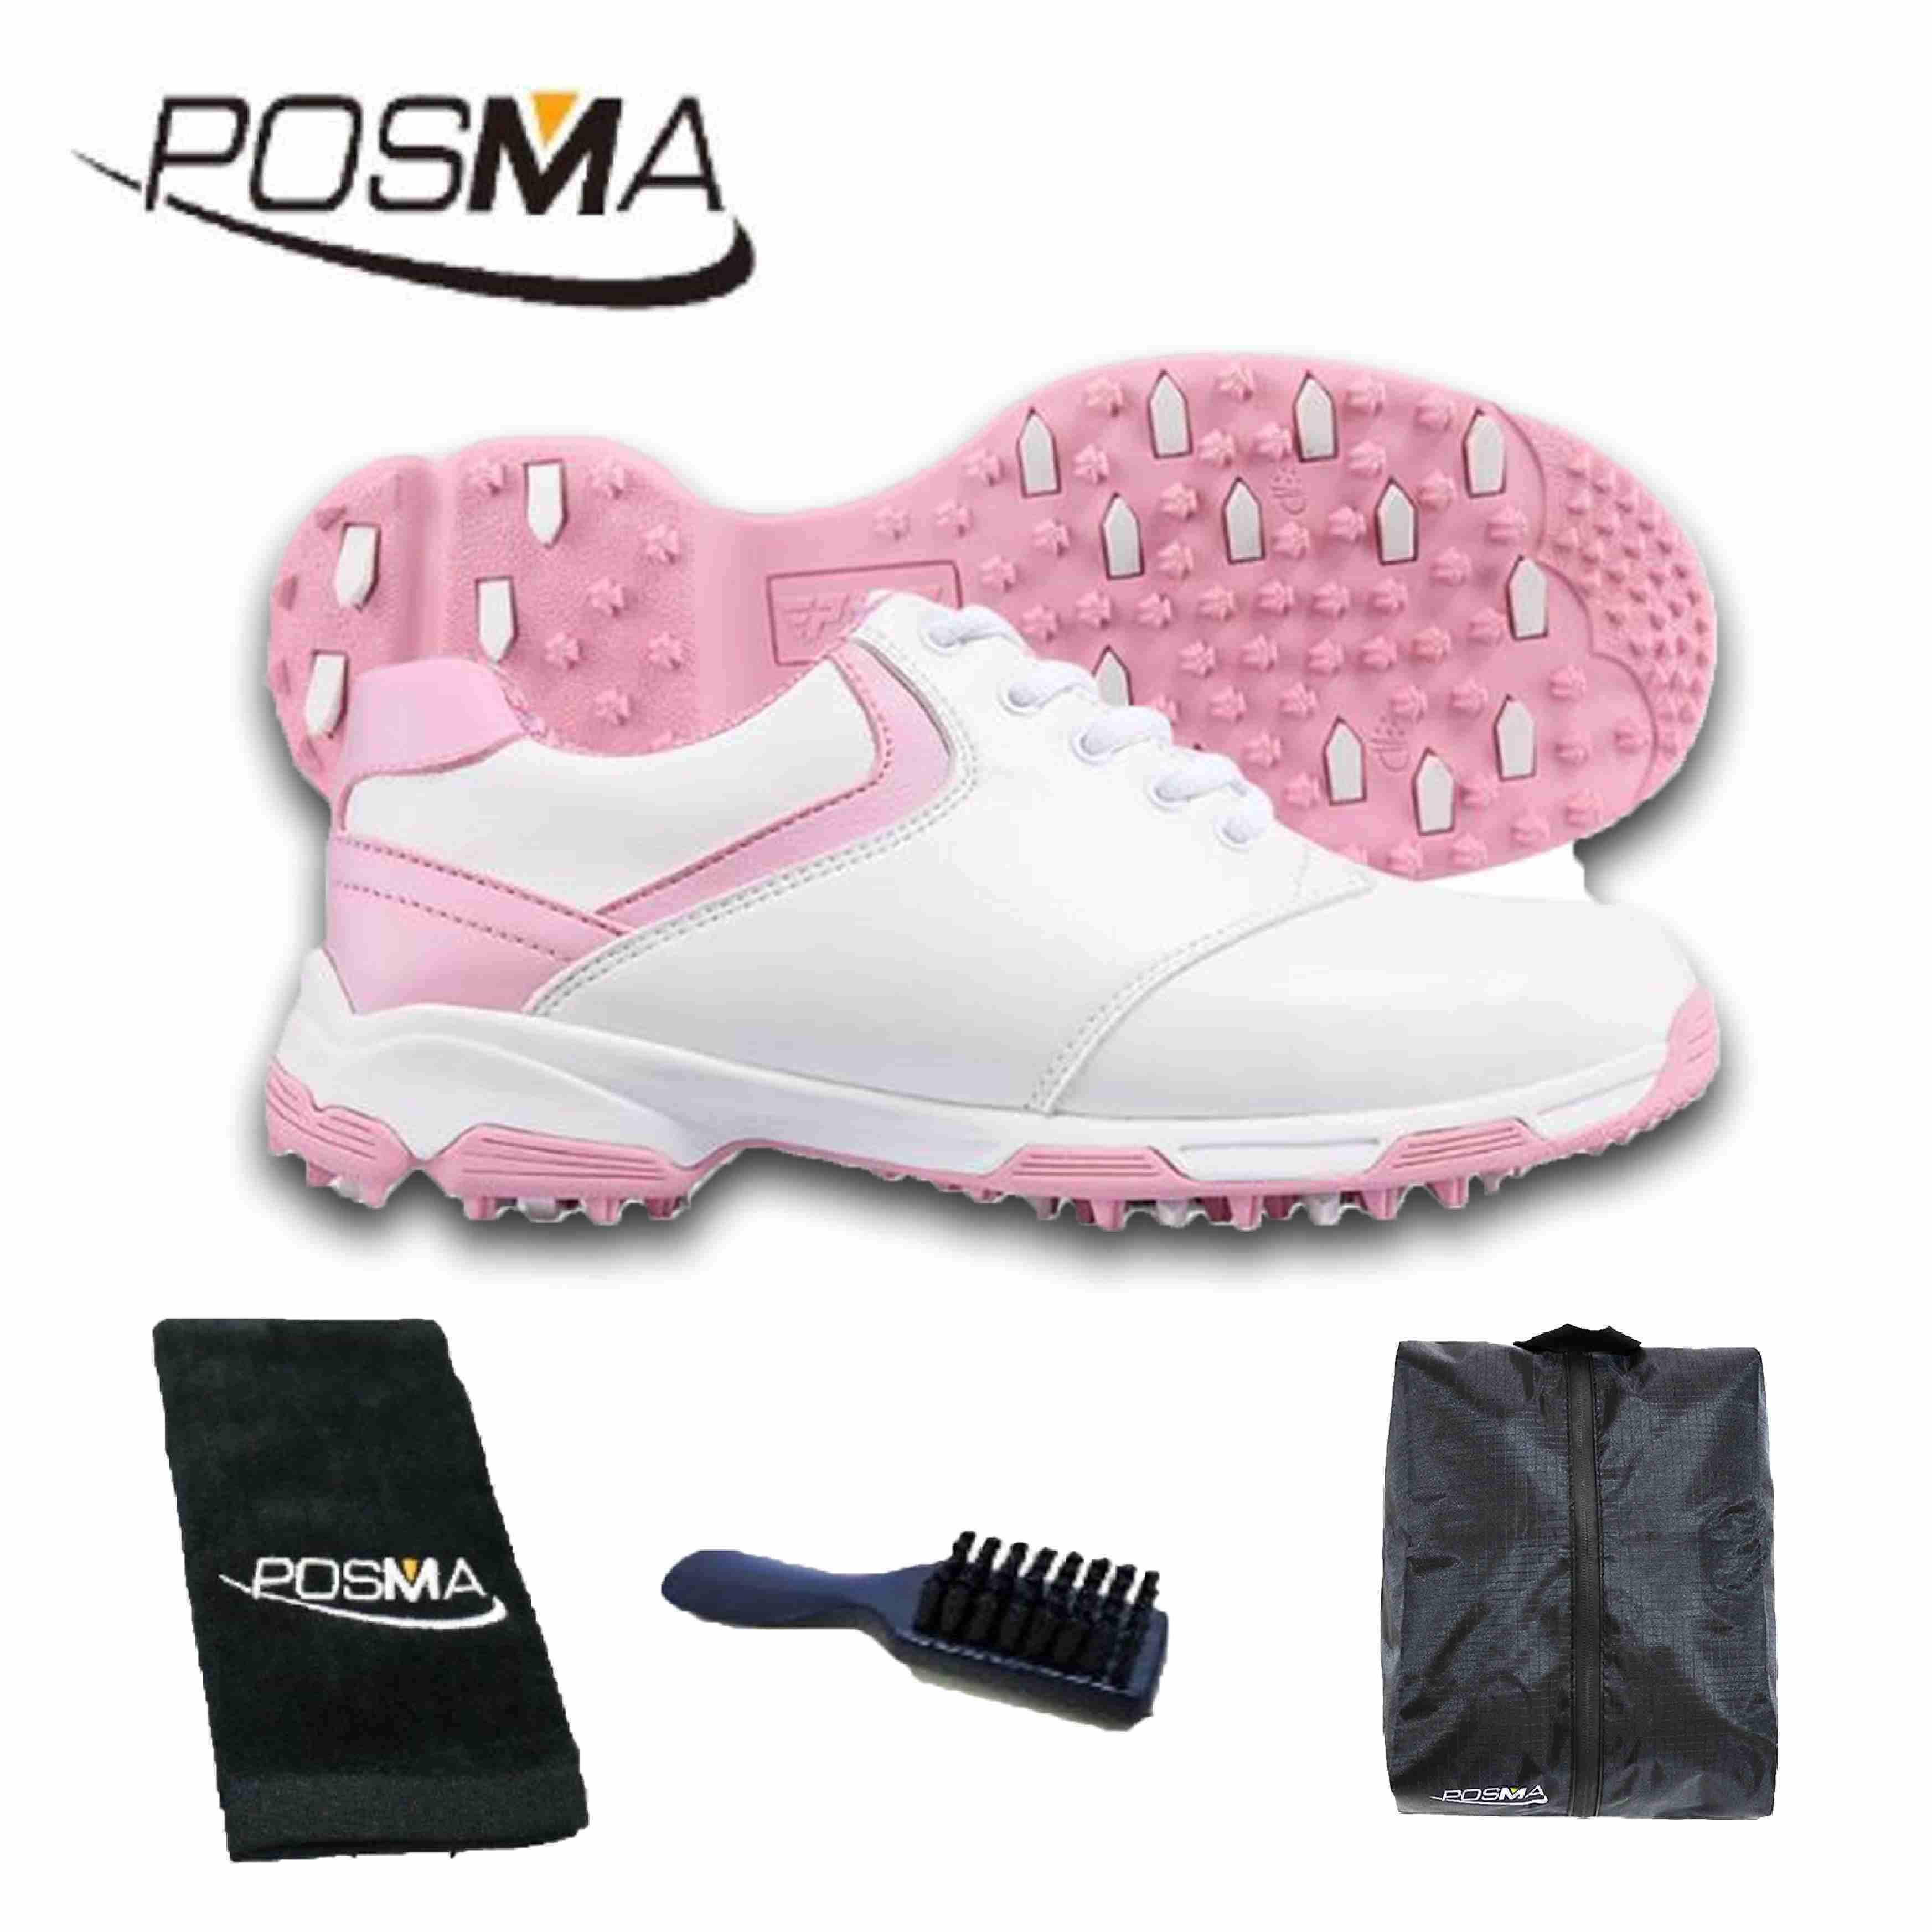 高爾夫球鞋女款球鞋 防側滑釘鞋 防水透氣 舒適柔軟 GSH051 白 粉 配POSMA鞋包 2合1清潔刷  高爾夫球毛巾